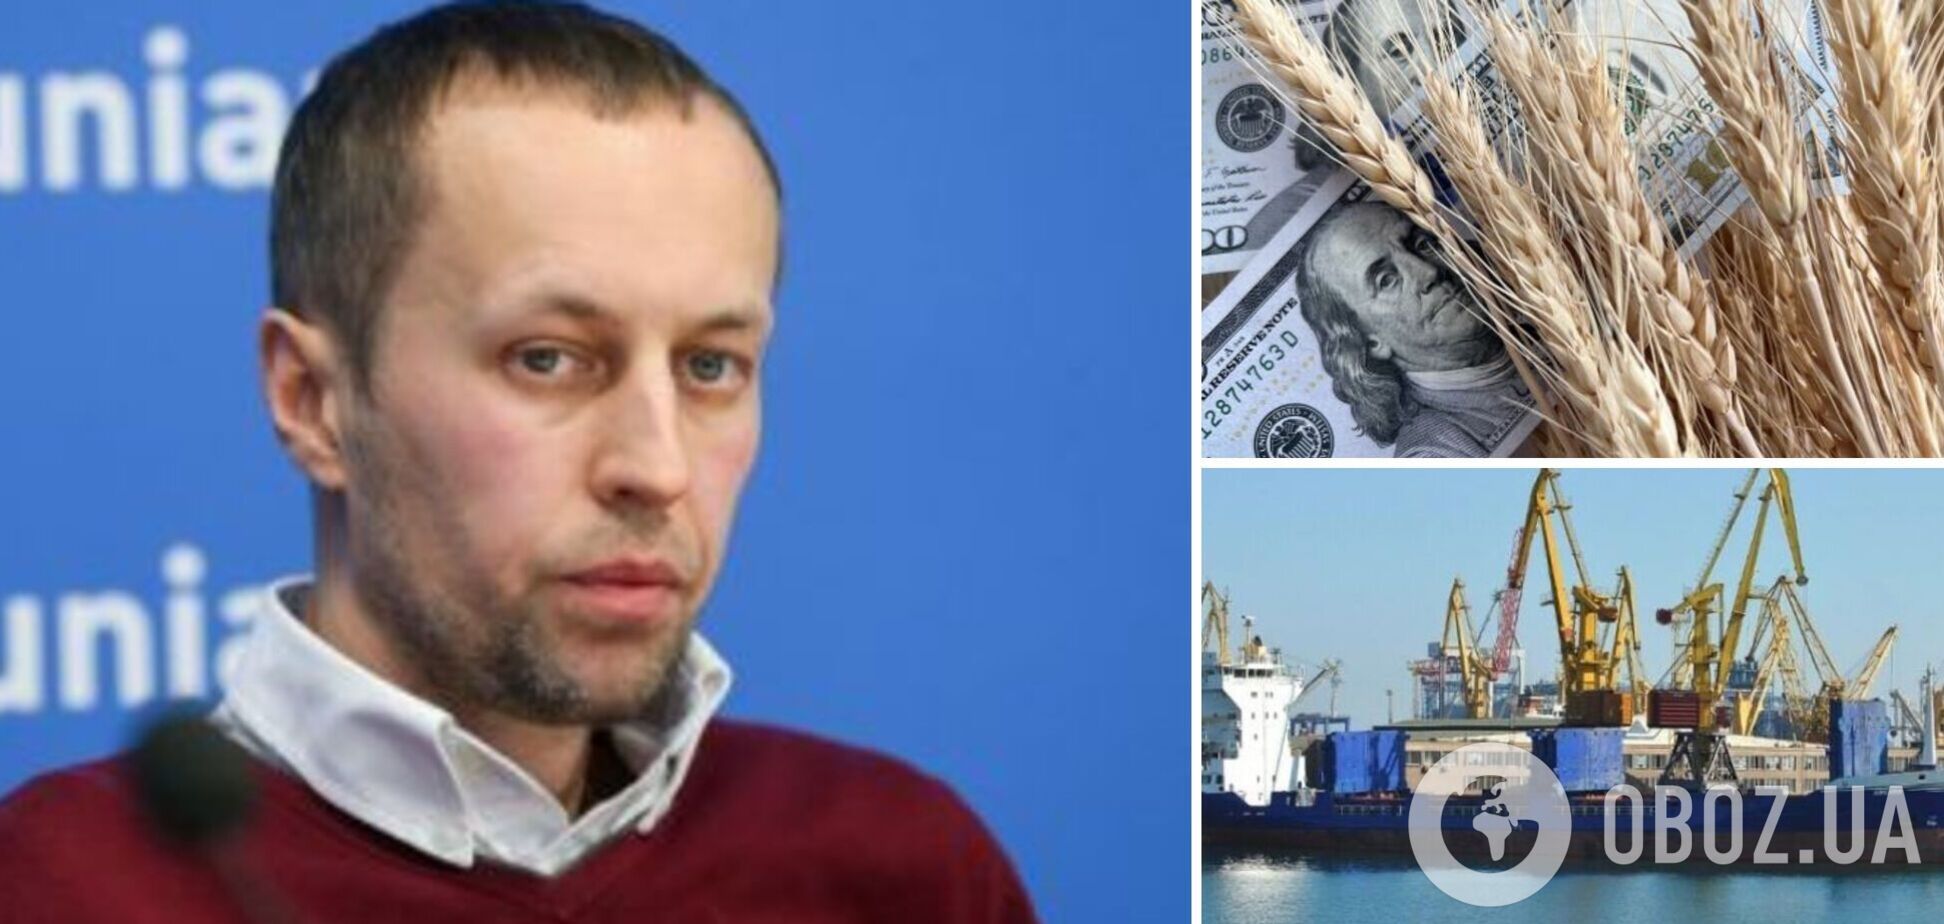 Розблокування портів дасть Україні понад 16 млрд грн надходжень щомісяця, – Забловський